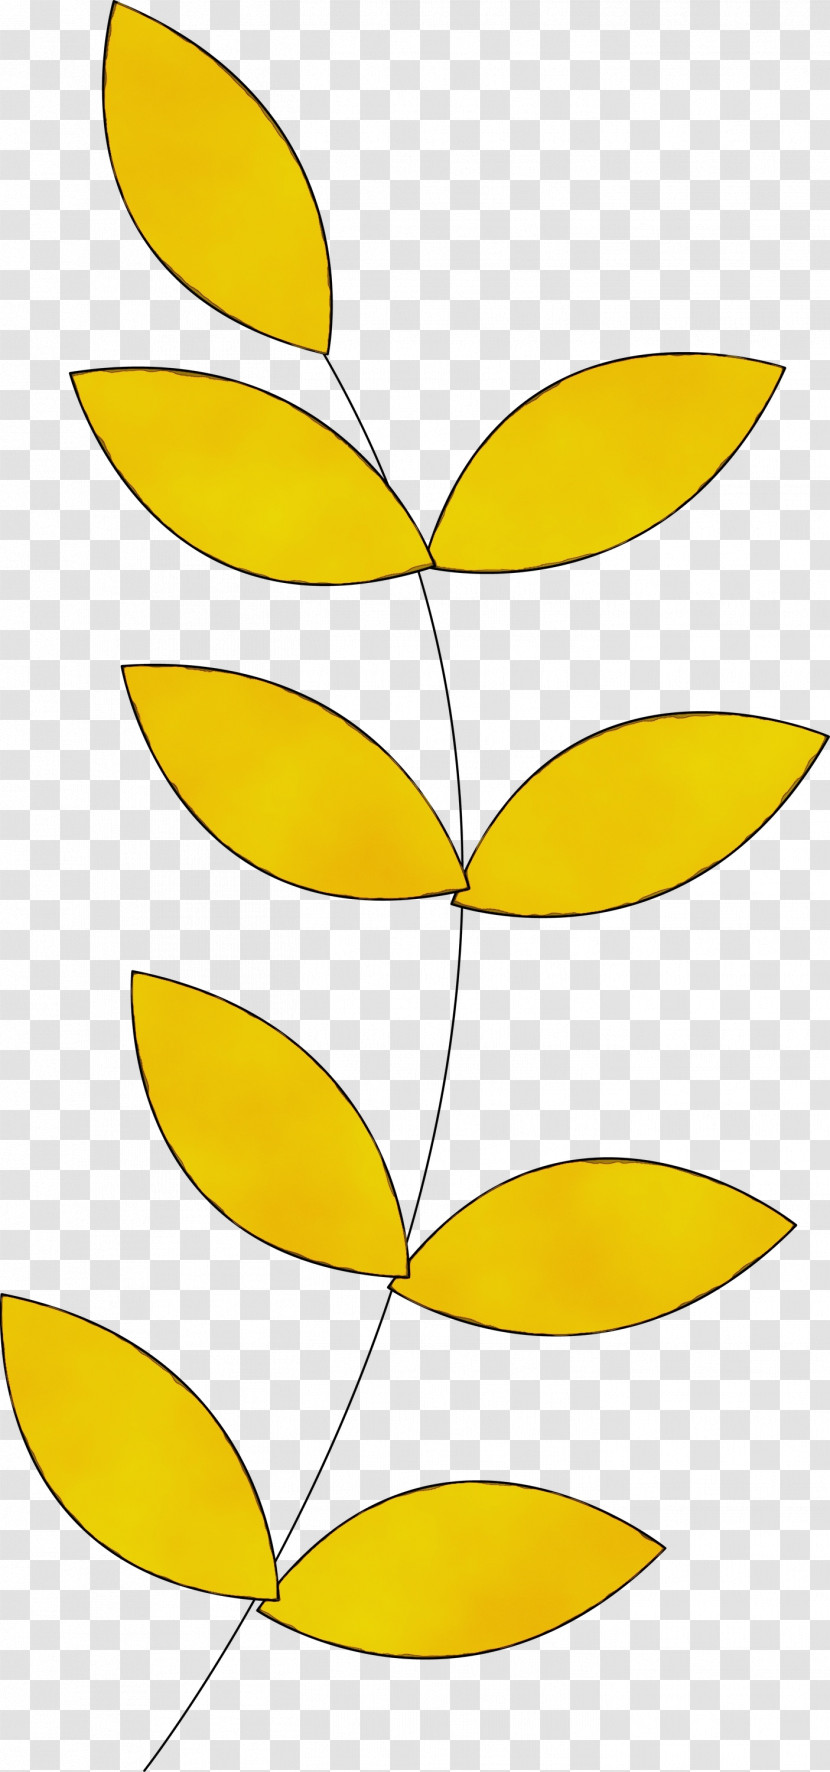 Plant Stem Petal Line Art Leaf Angle Transparent PNG